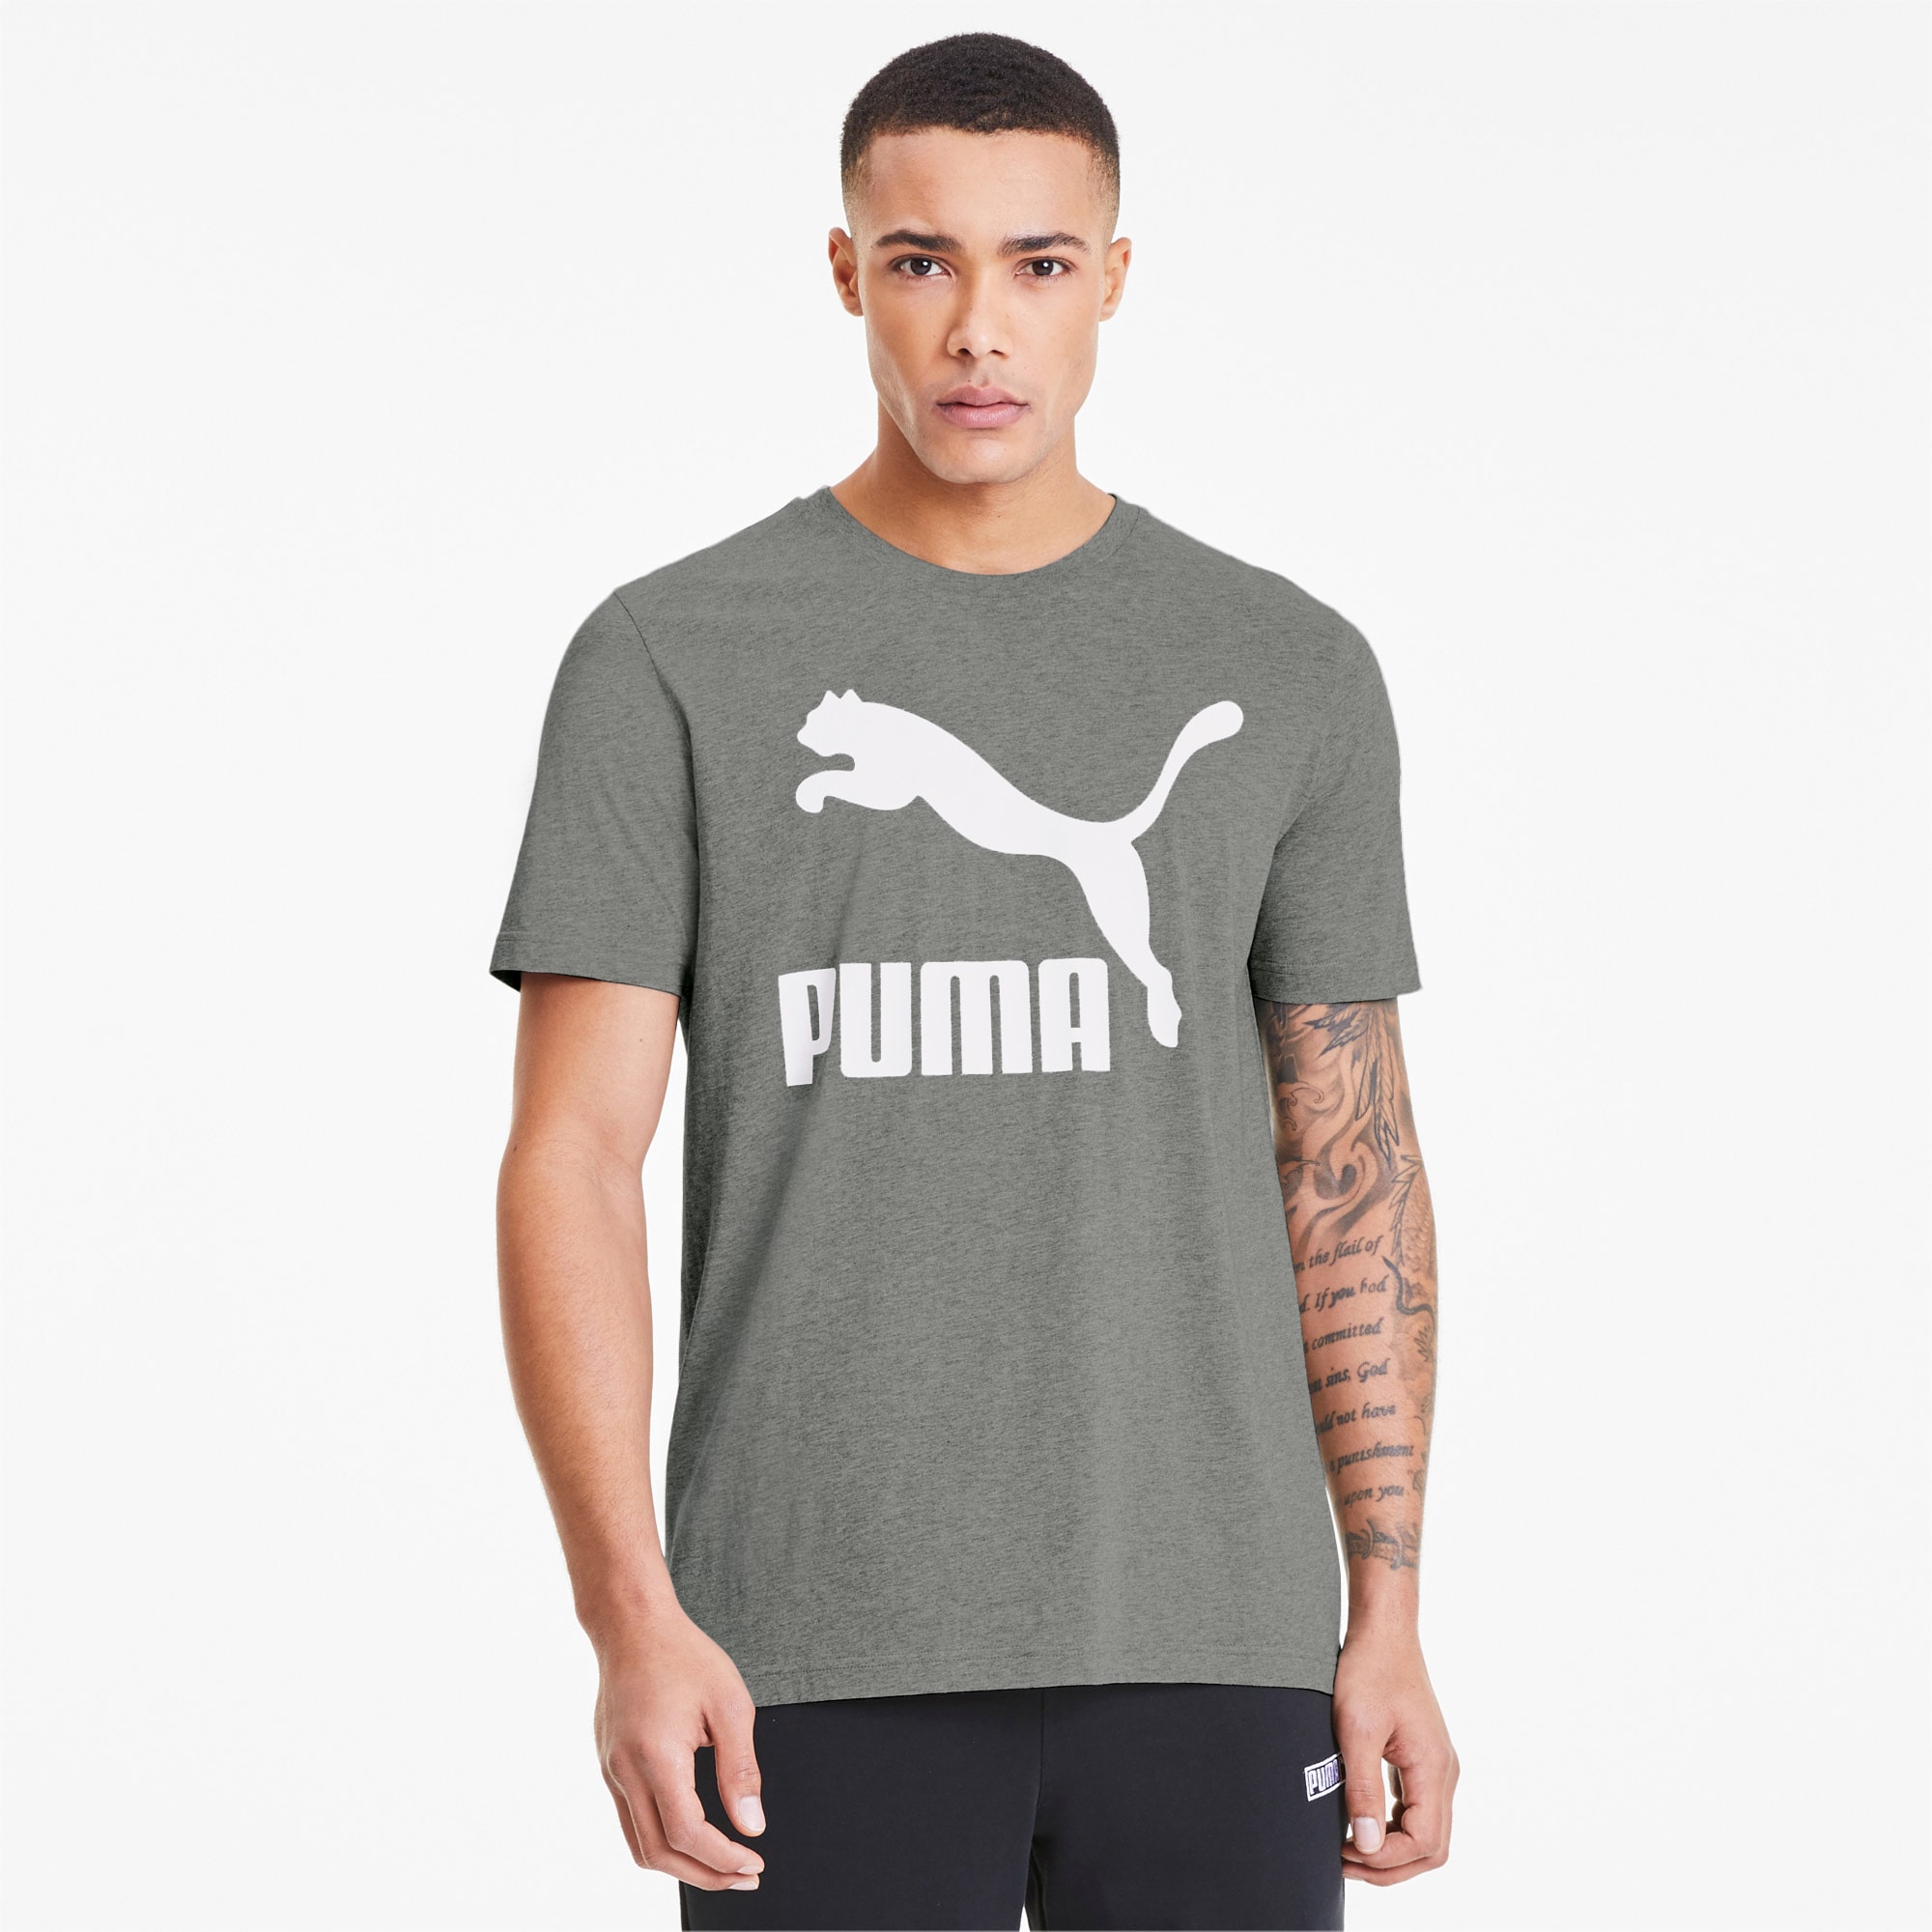 puma clothing for men